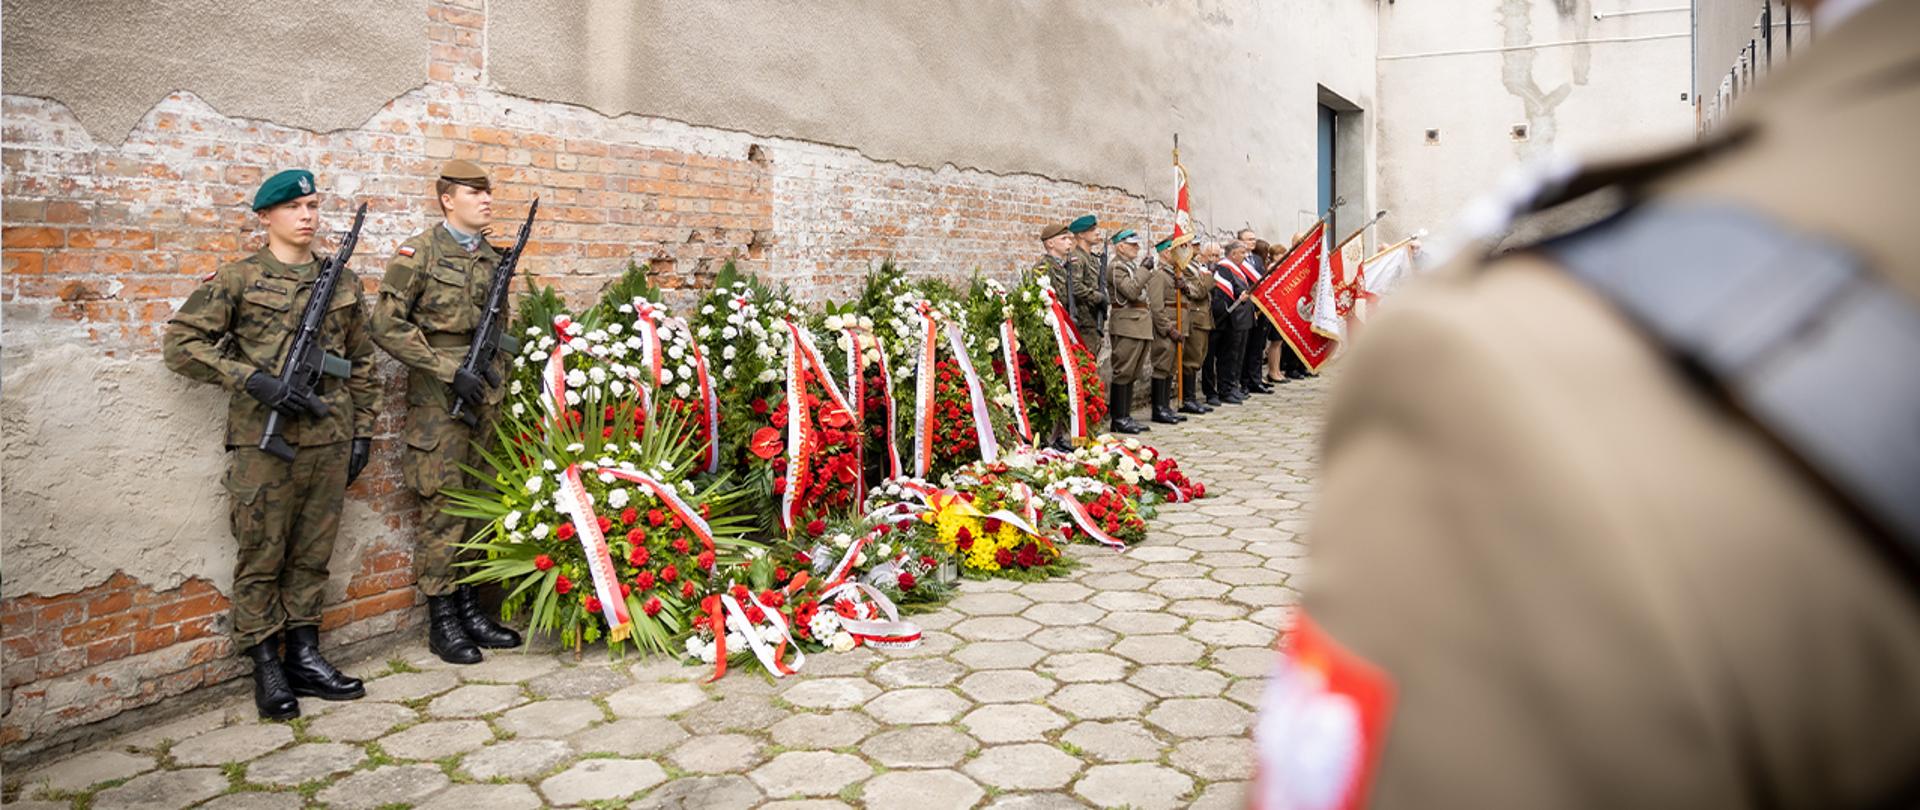 Ściana Śmierci w więzieniu w Warszawie przy ul. Rakowieckiej